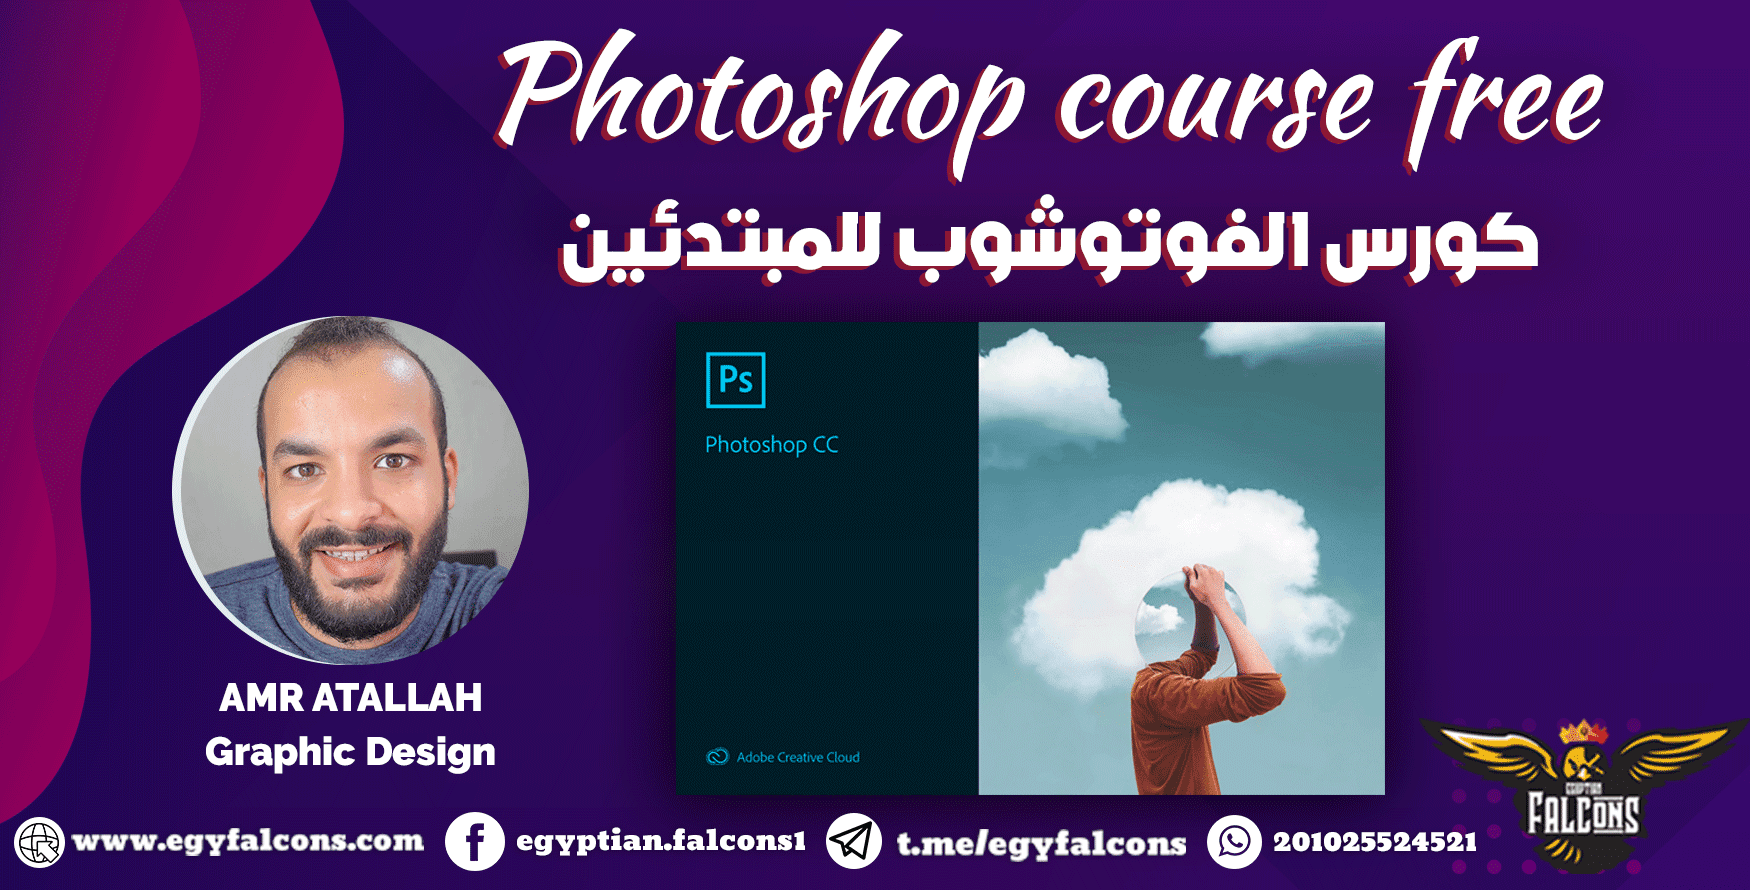 سلسلة تعليم برامج الجرافيك l كورس فوتوشوب للمبتدئين Photoshop Course Free l